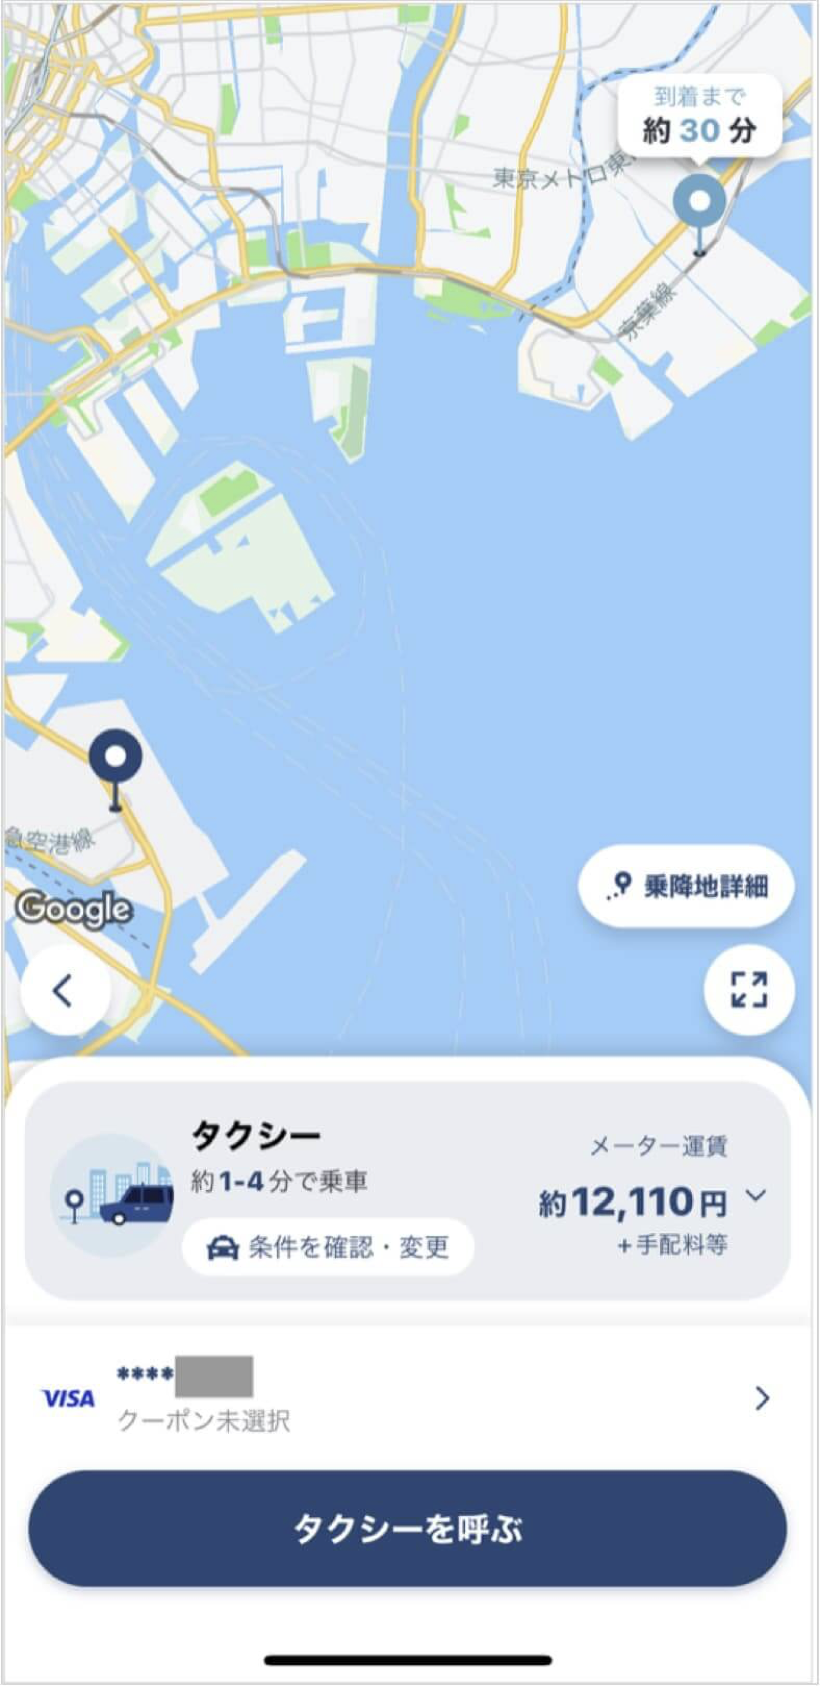 羽田空港から新浦安までのタクシー料金・所要時間まとめ